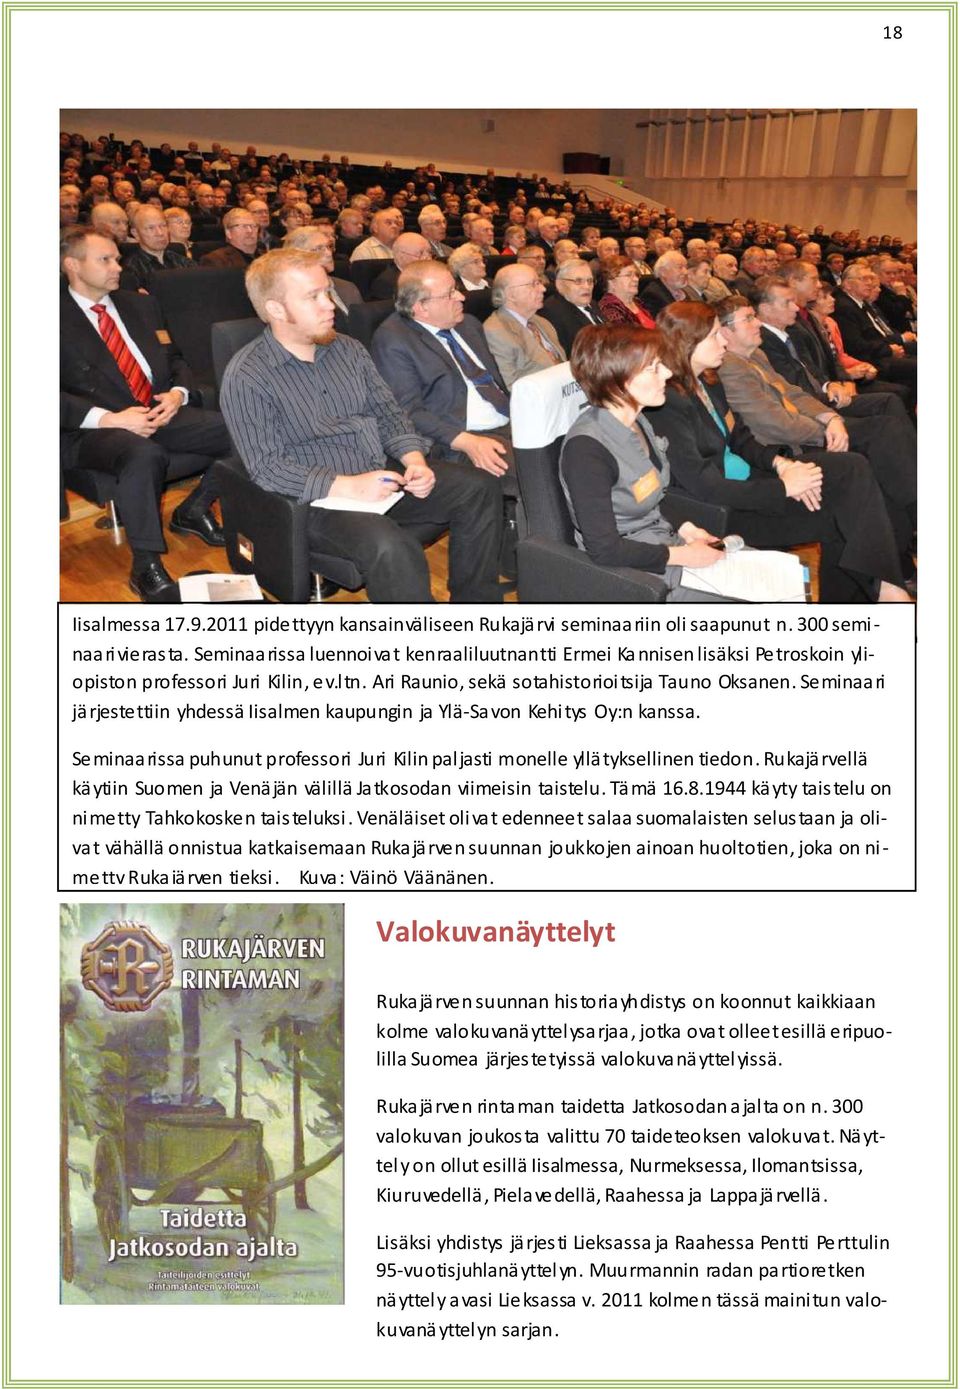 Seminaari järjestettiin yhdessä Iisalmen kaupungin ja Ylä-Savon Kehitys Oy:n kanssa. Seminaarissa puhunut professori Juri Kilin paljasti monelle yllätyksellinen tiedon.